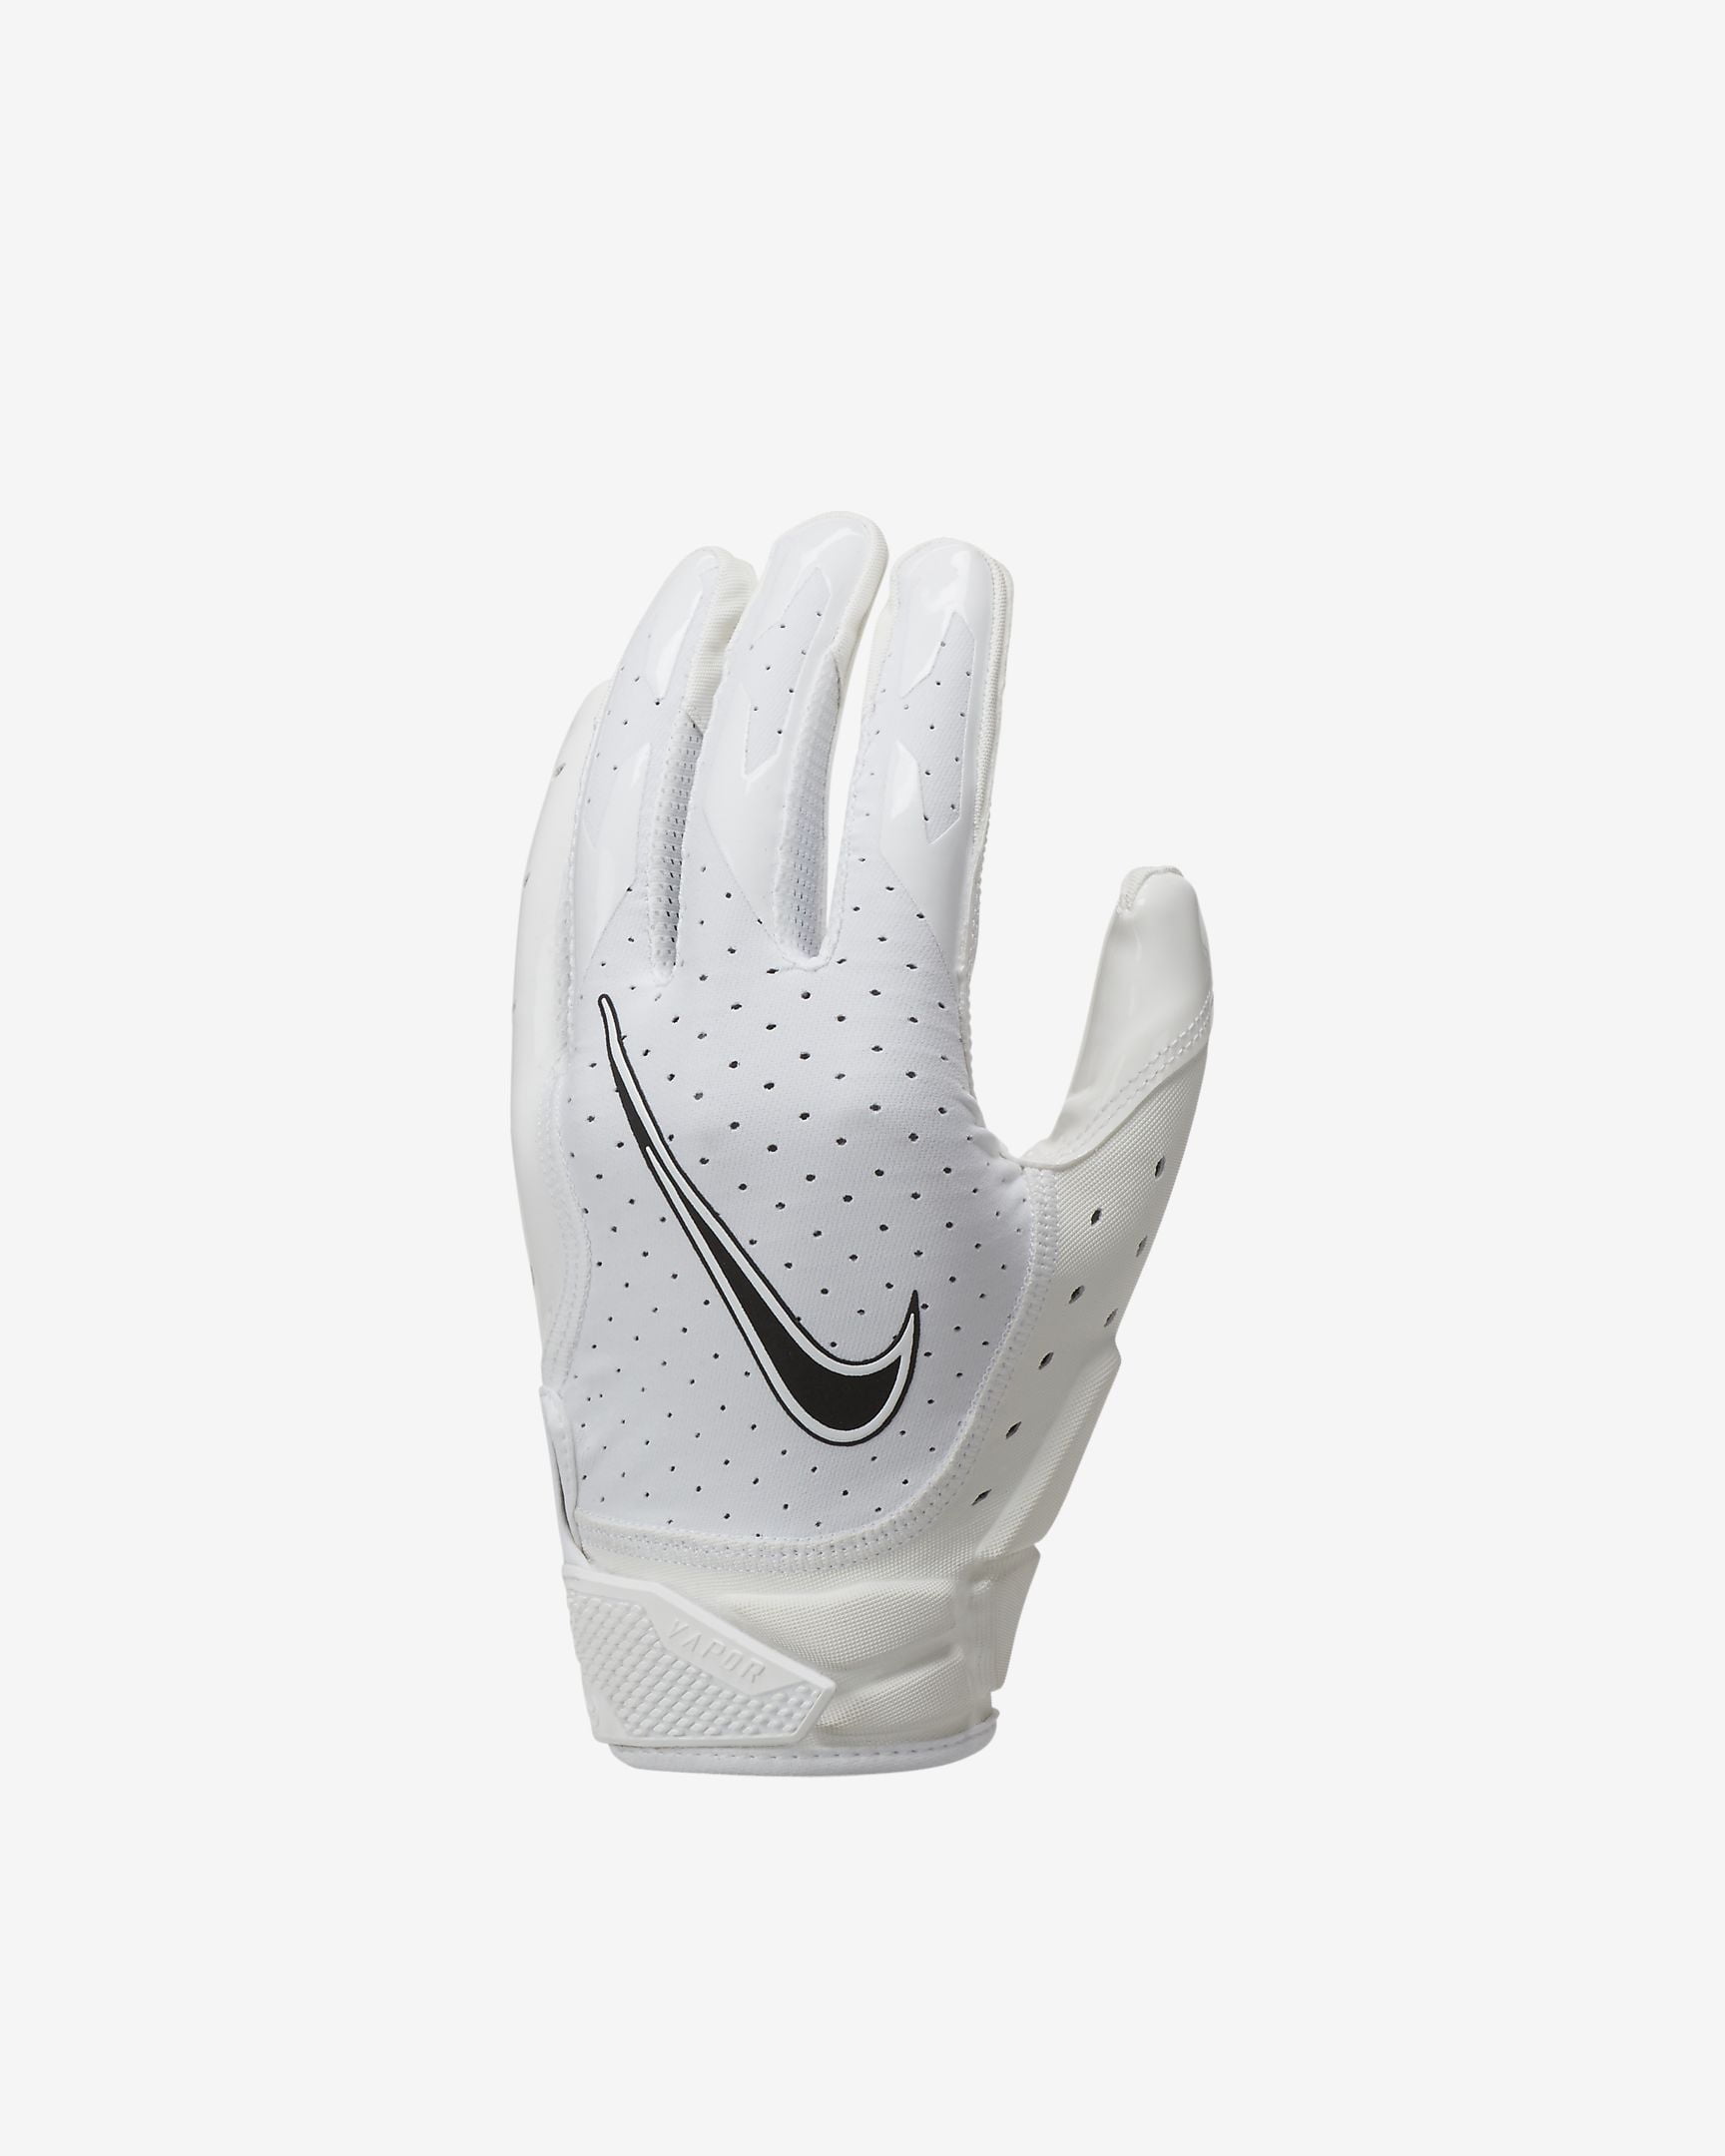 nike vapor jet 6.0 football gloves